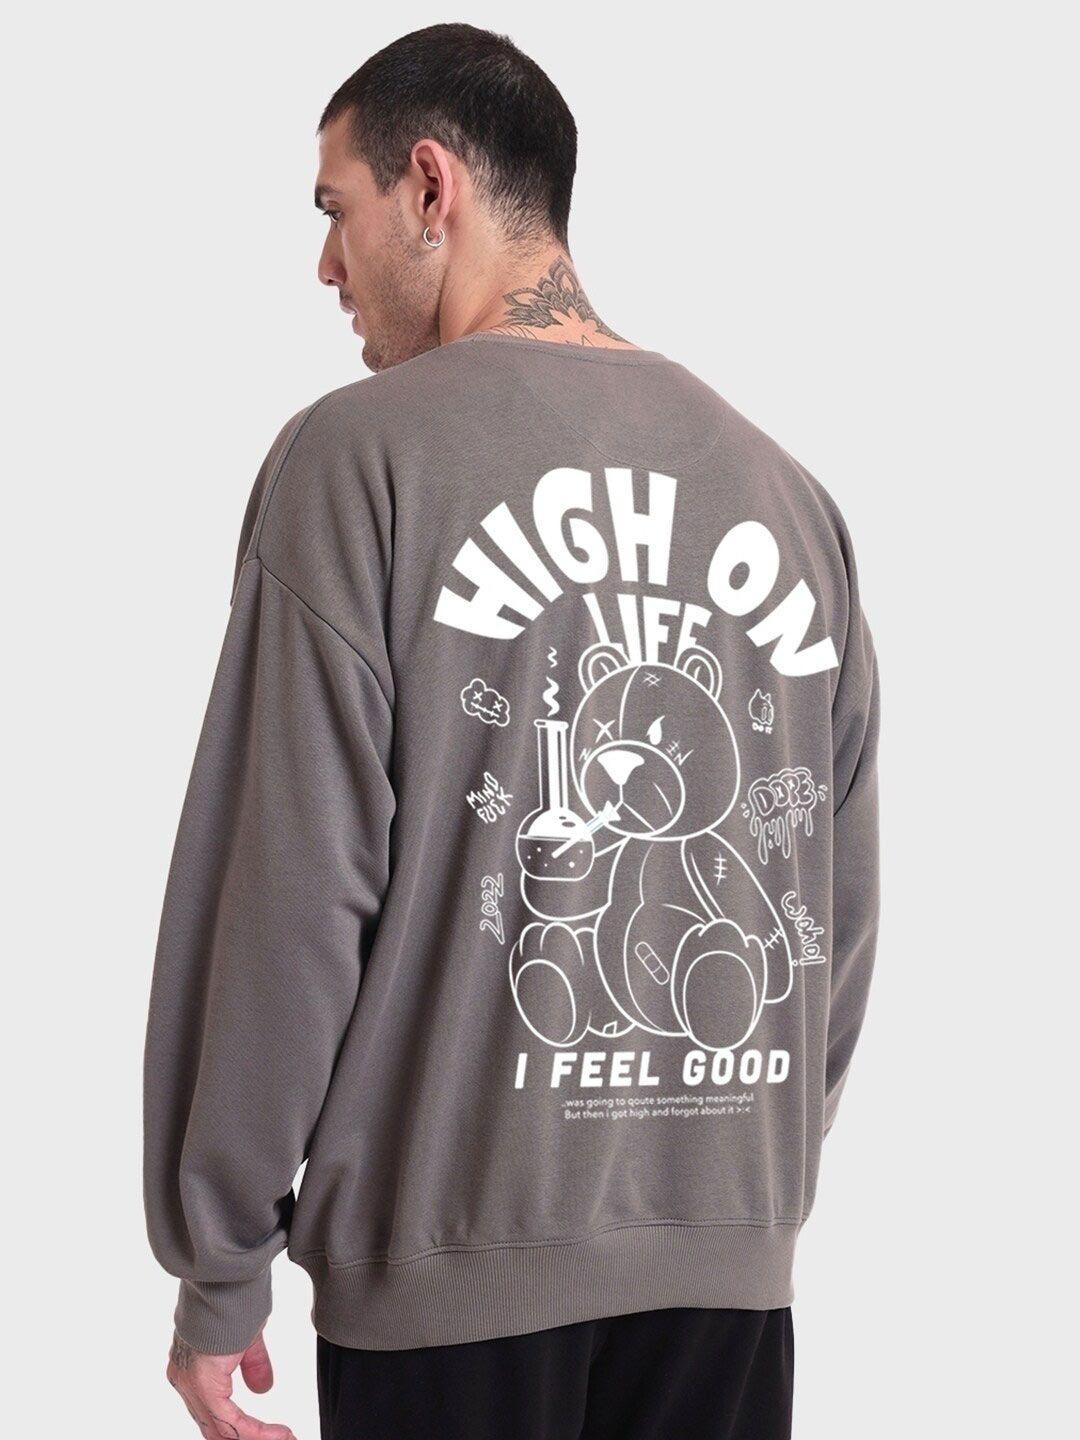 bewakoof-grey-typography-printed-fleece-oversized-sweatshirt